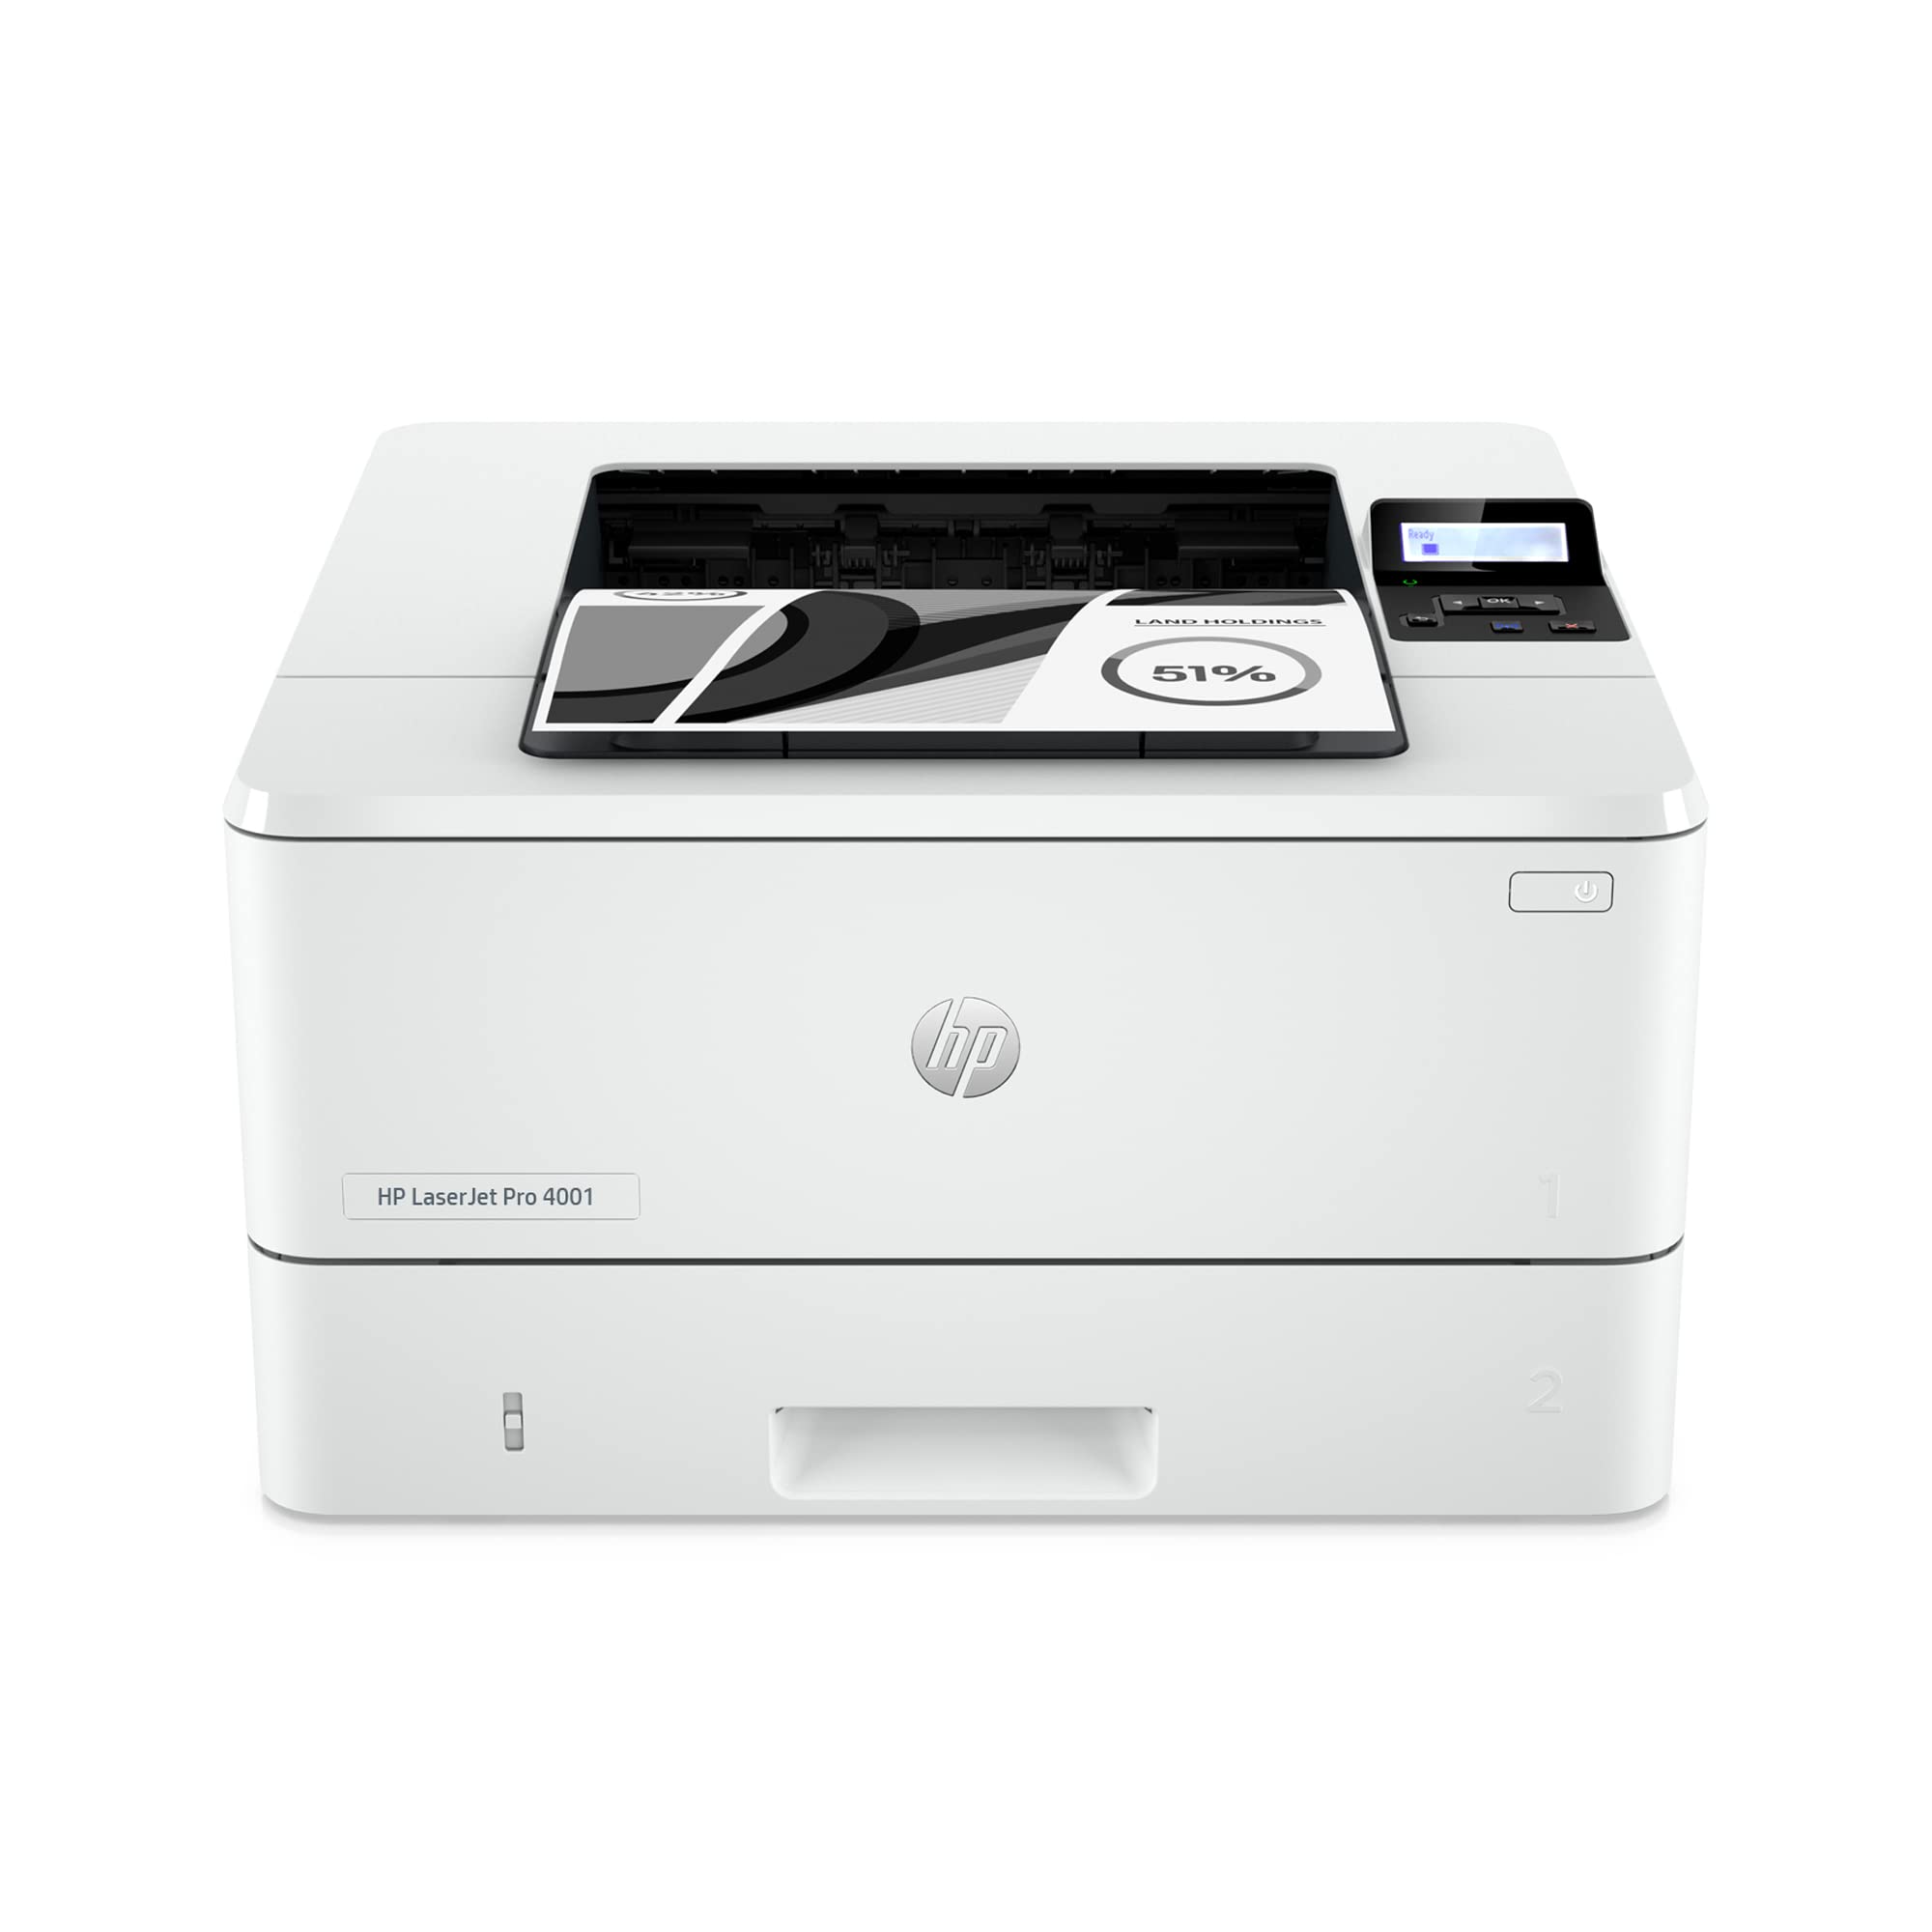 HP LaserJet Pro 4001dw 무선 흑백 프린터